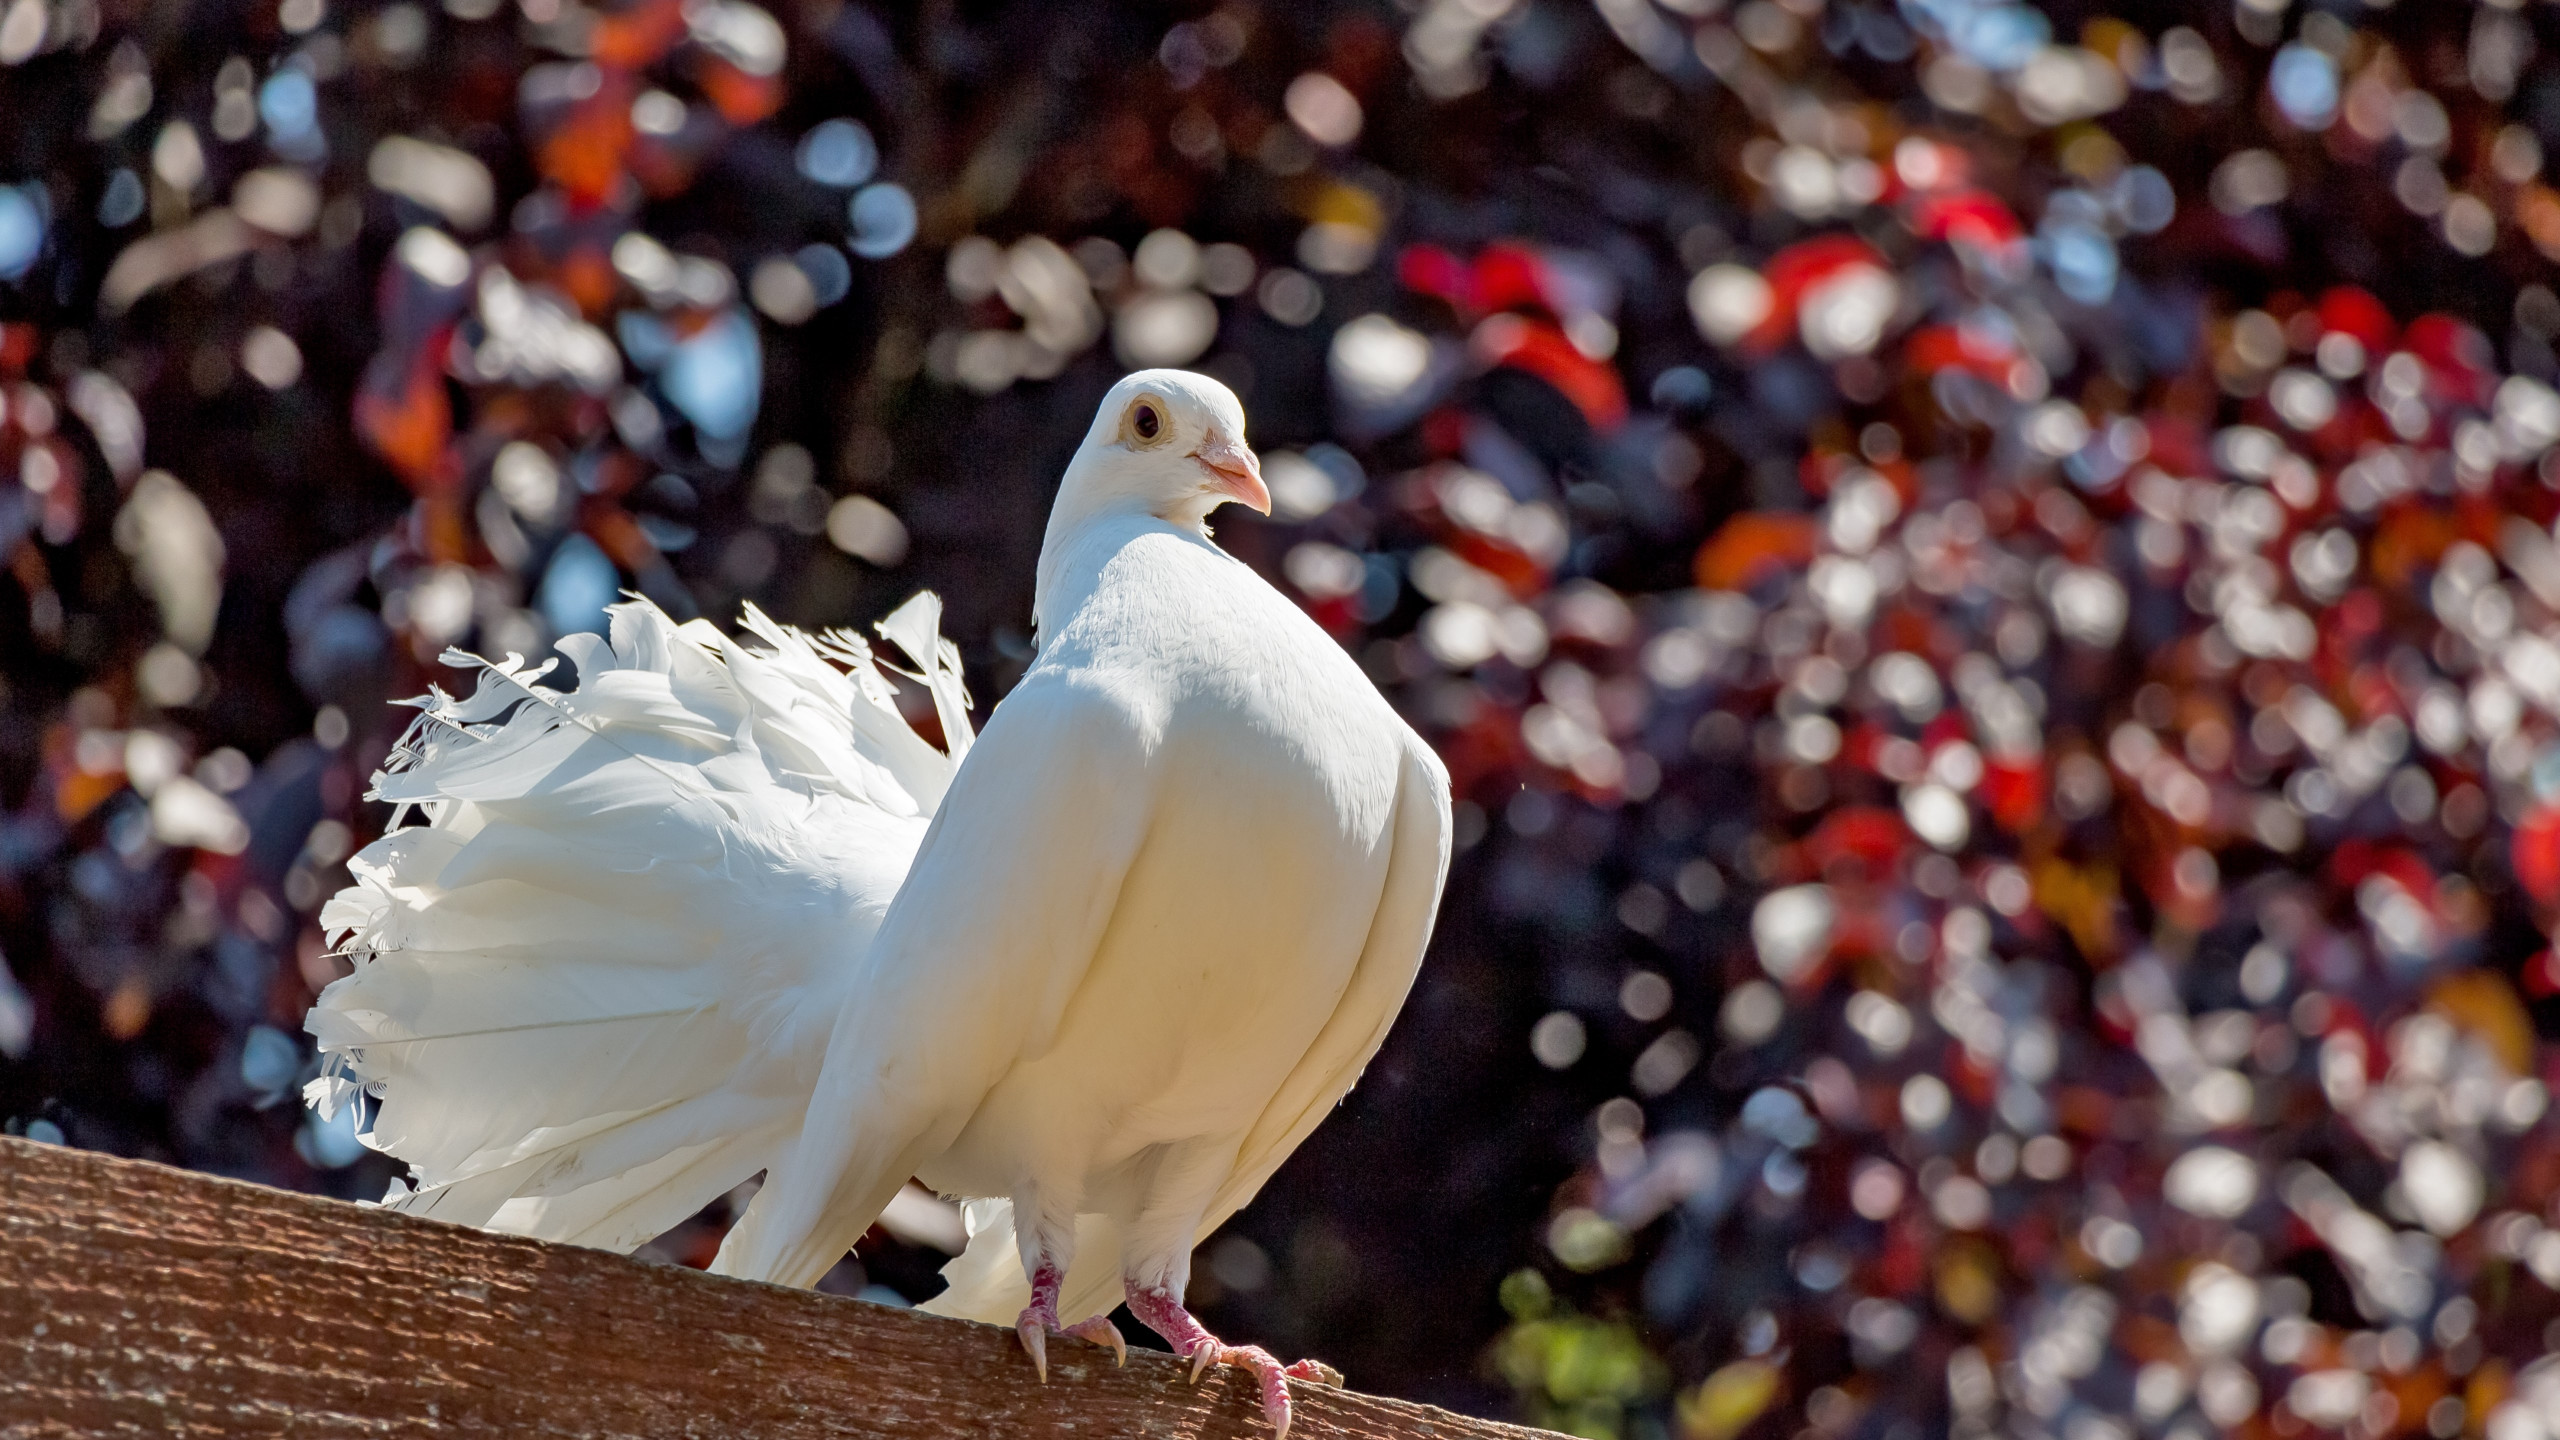 White pigeon wallpaper 2560x1440